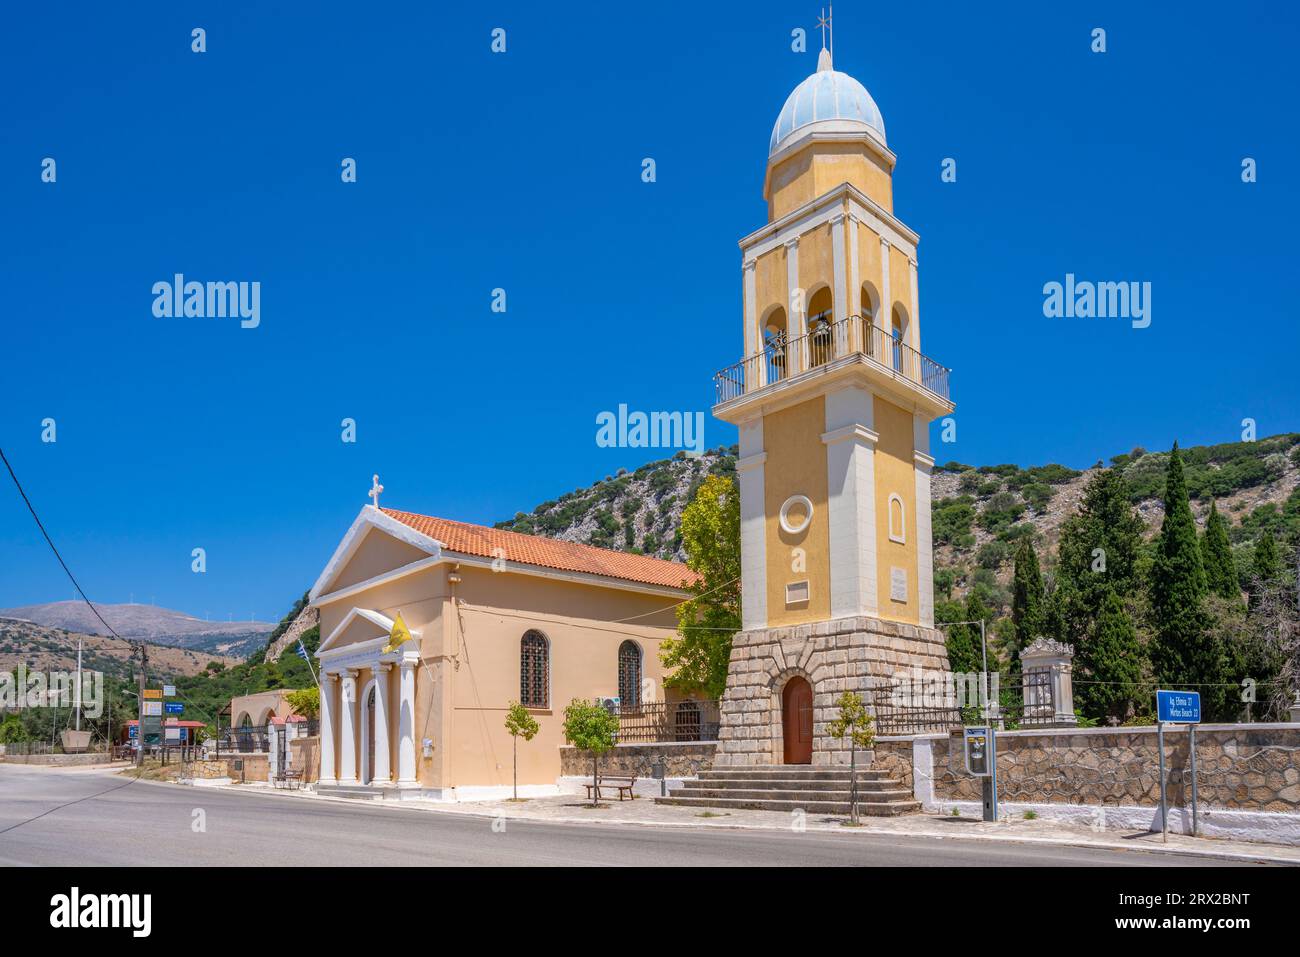 Vue de l'église orthodoxe grecque près d'Argostoli, capitale de Céphalonie, Céphalonie, îles Ioniennes, îles grecques, Grèce, Europe Banque D'Images